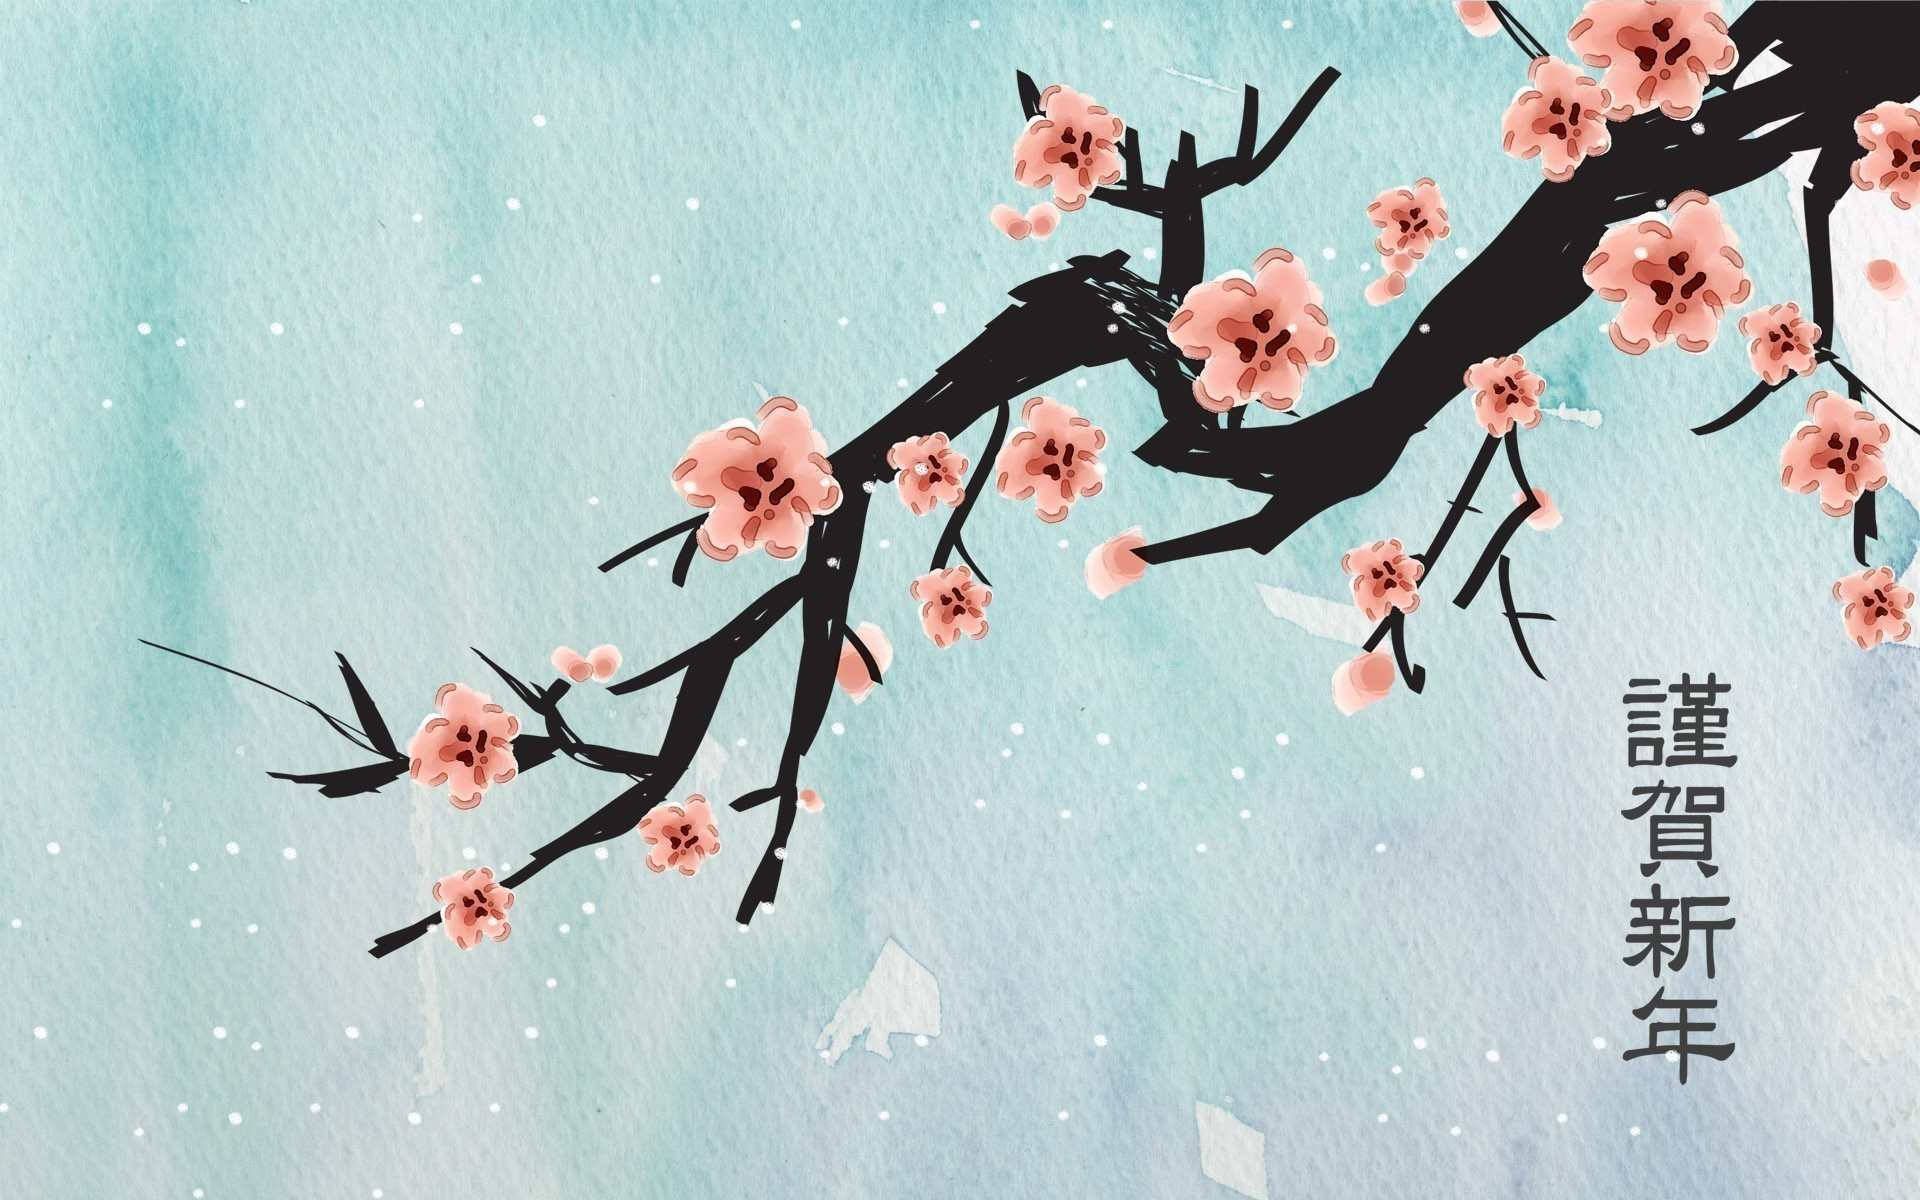 Refreshing and Elegant - Japanese Cherry Blossom Art Wallpaper